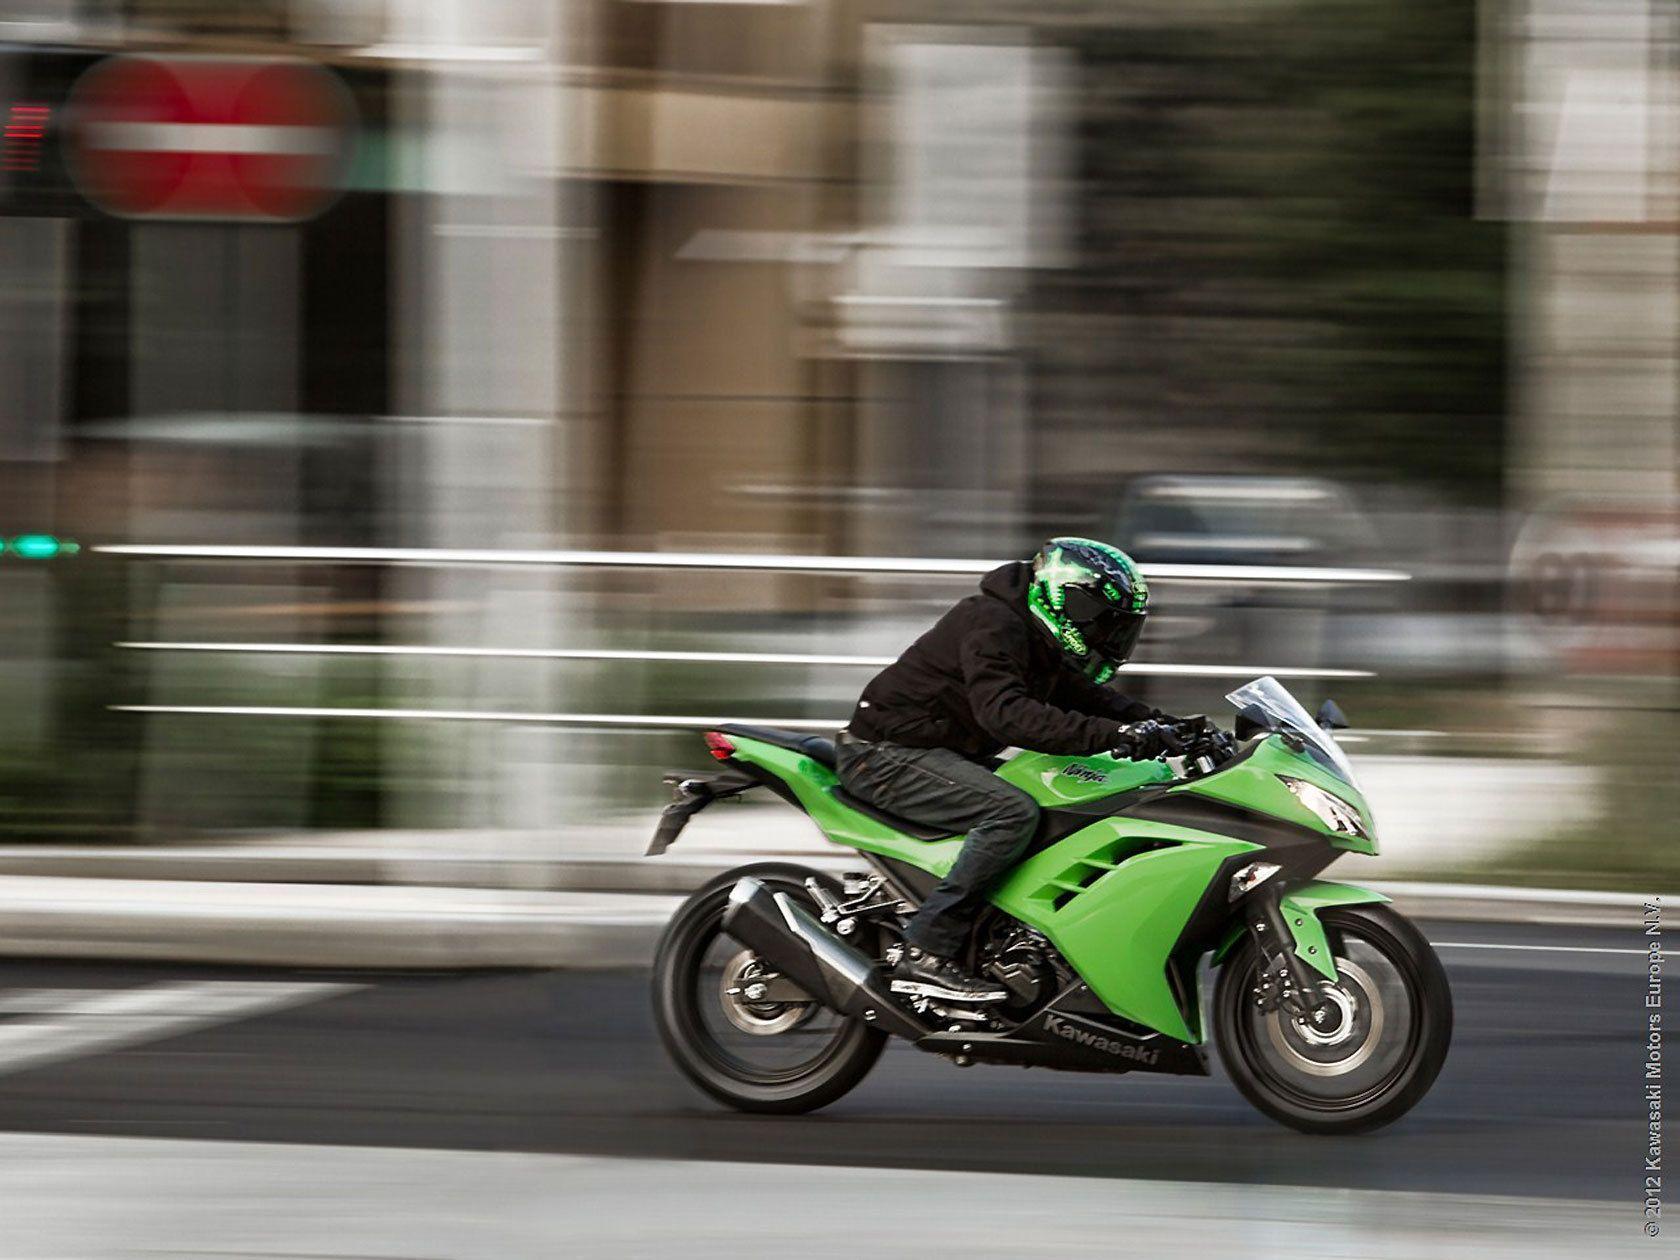 Fast bike Kawasaki Ninja 300 wallpaper and image